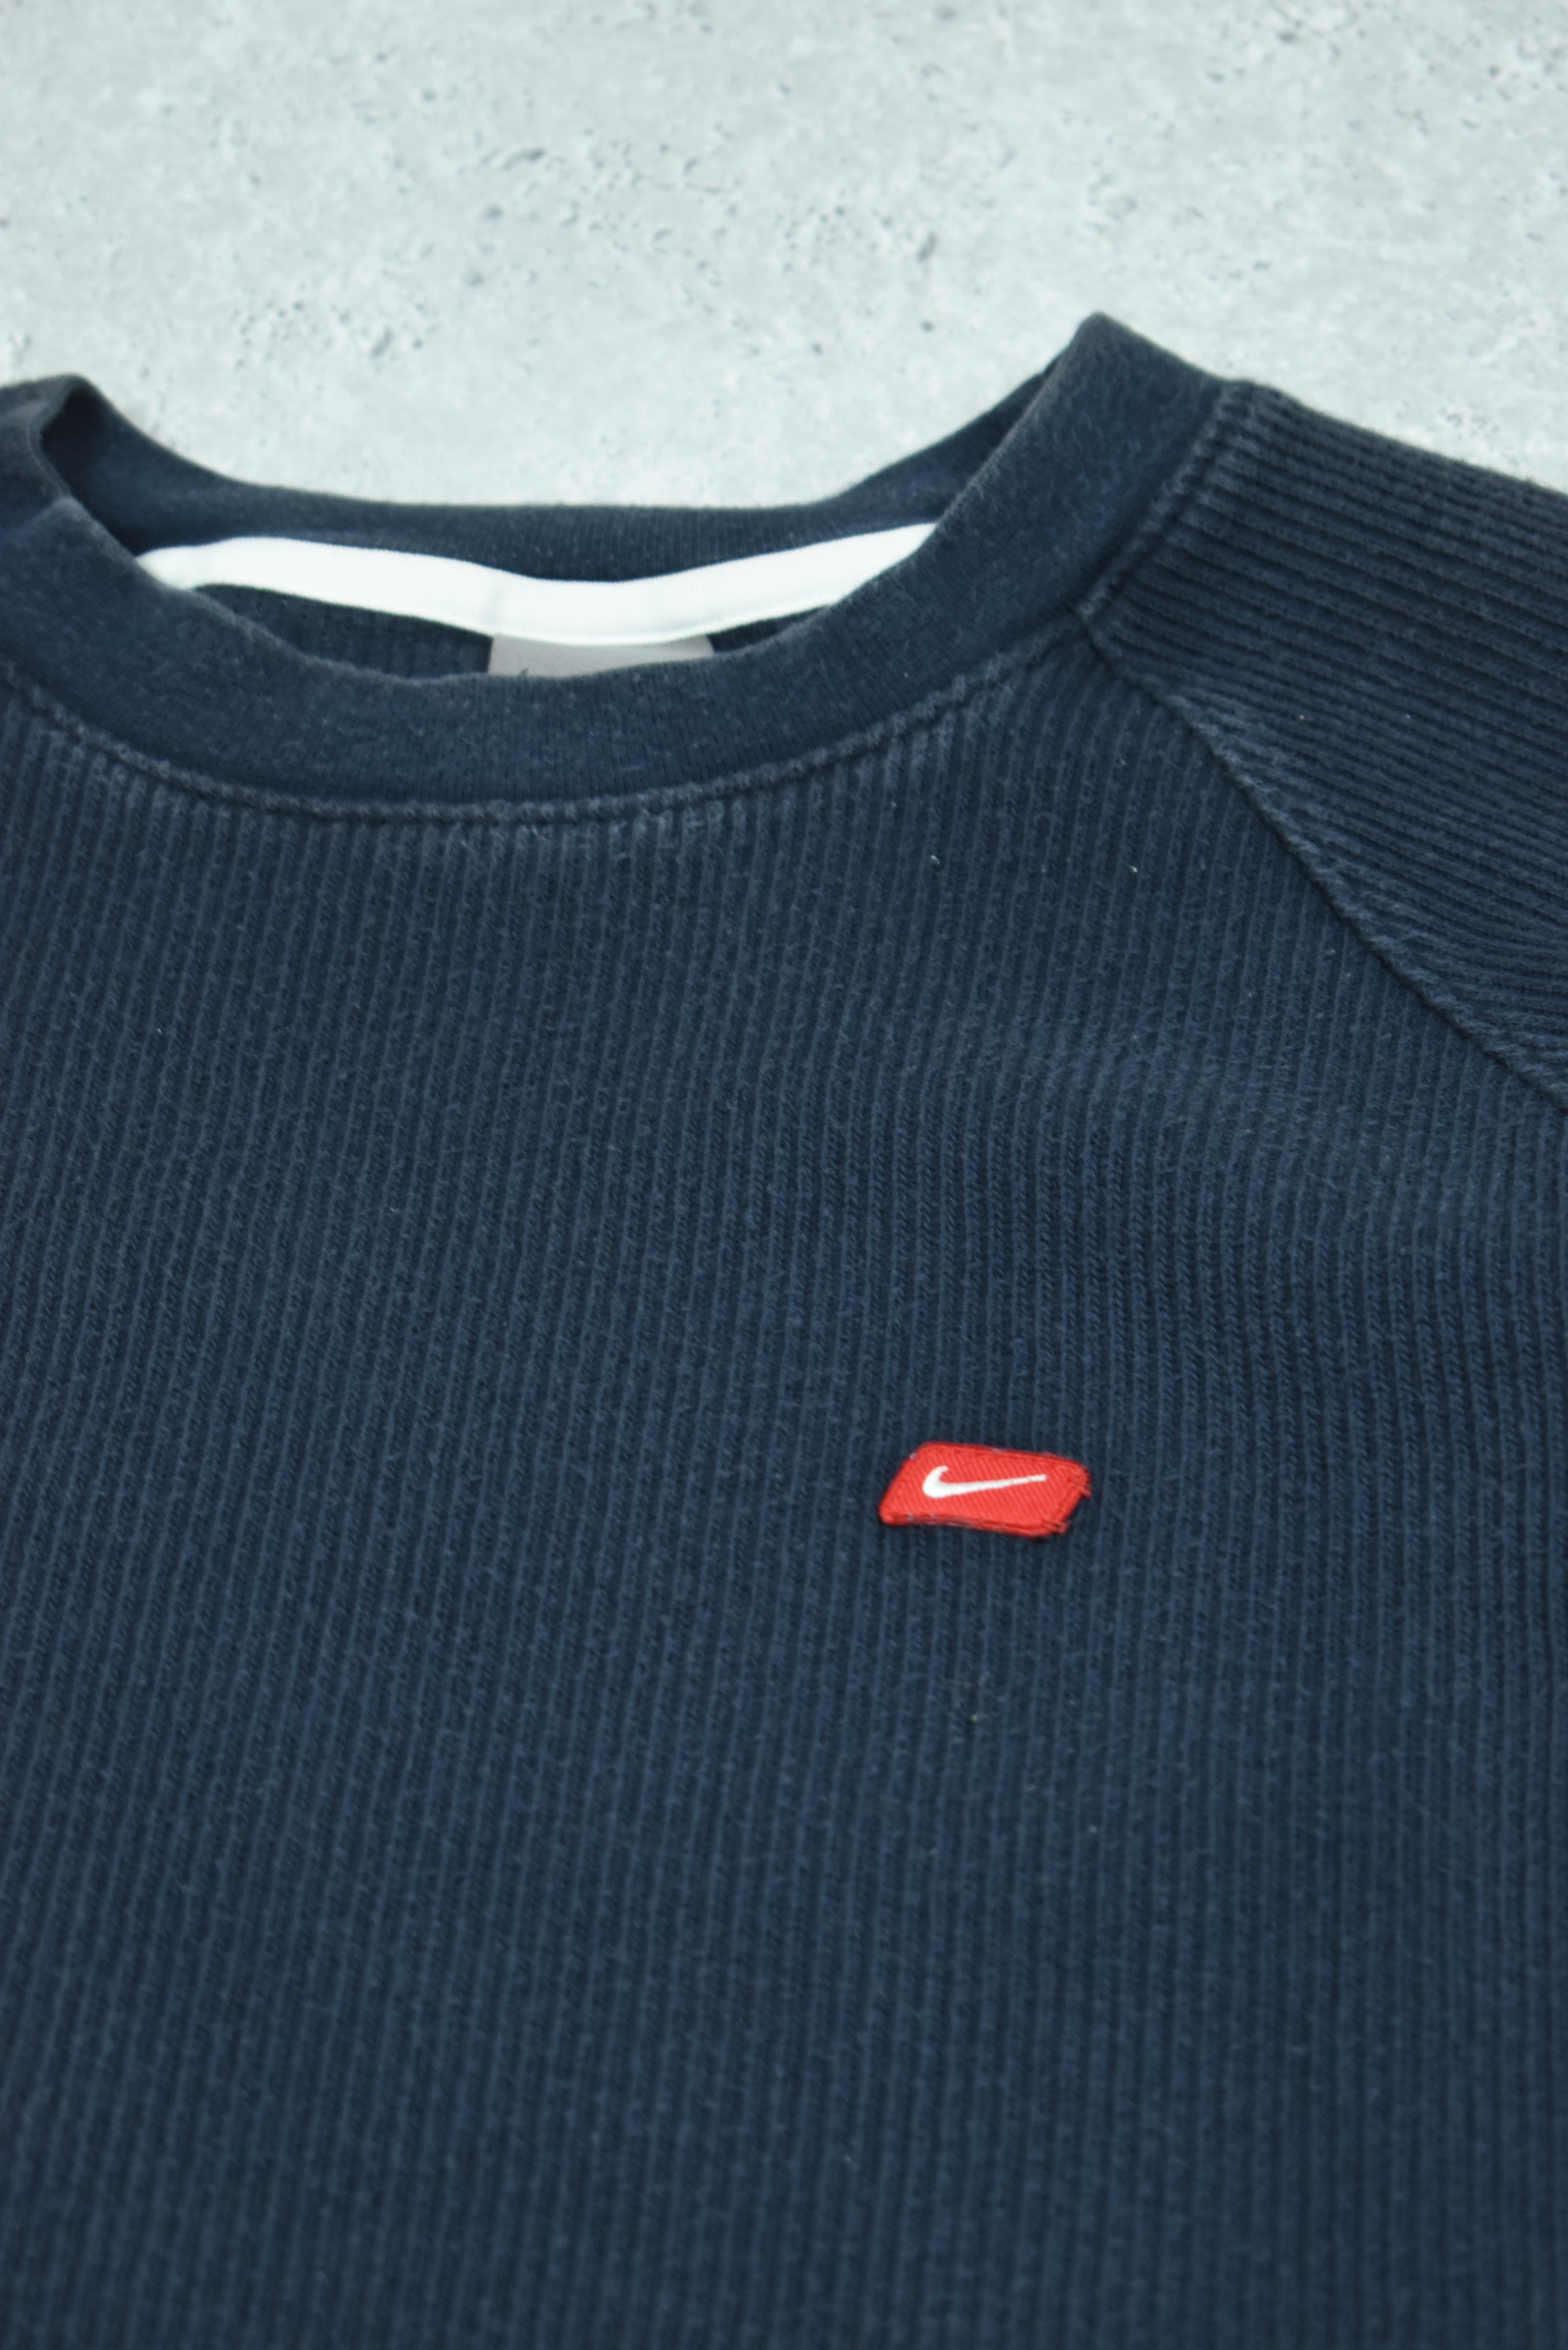 Vintage Nike Embroidery Cord Sweatshirt Medium